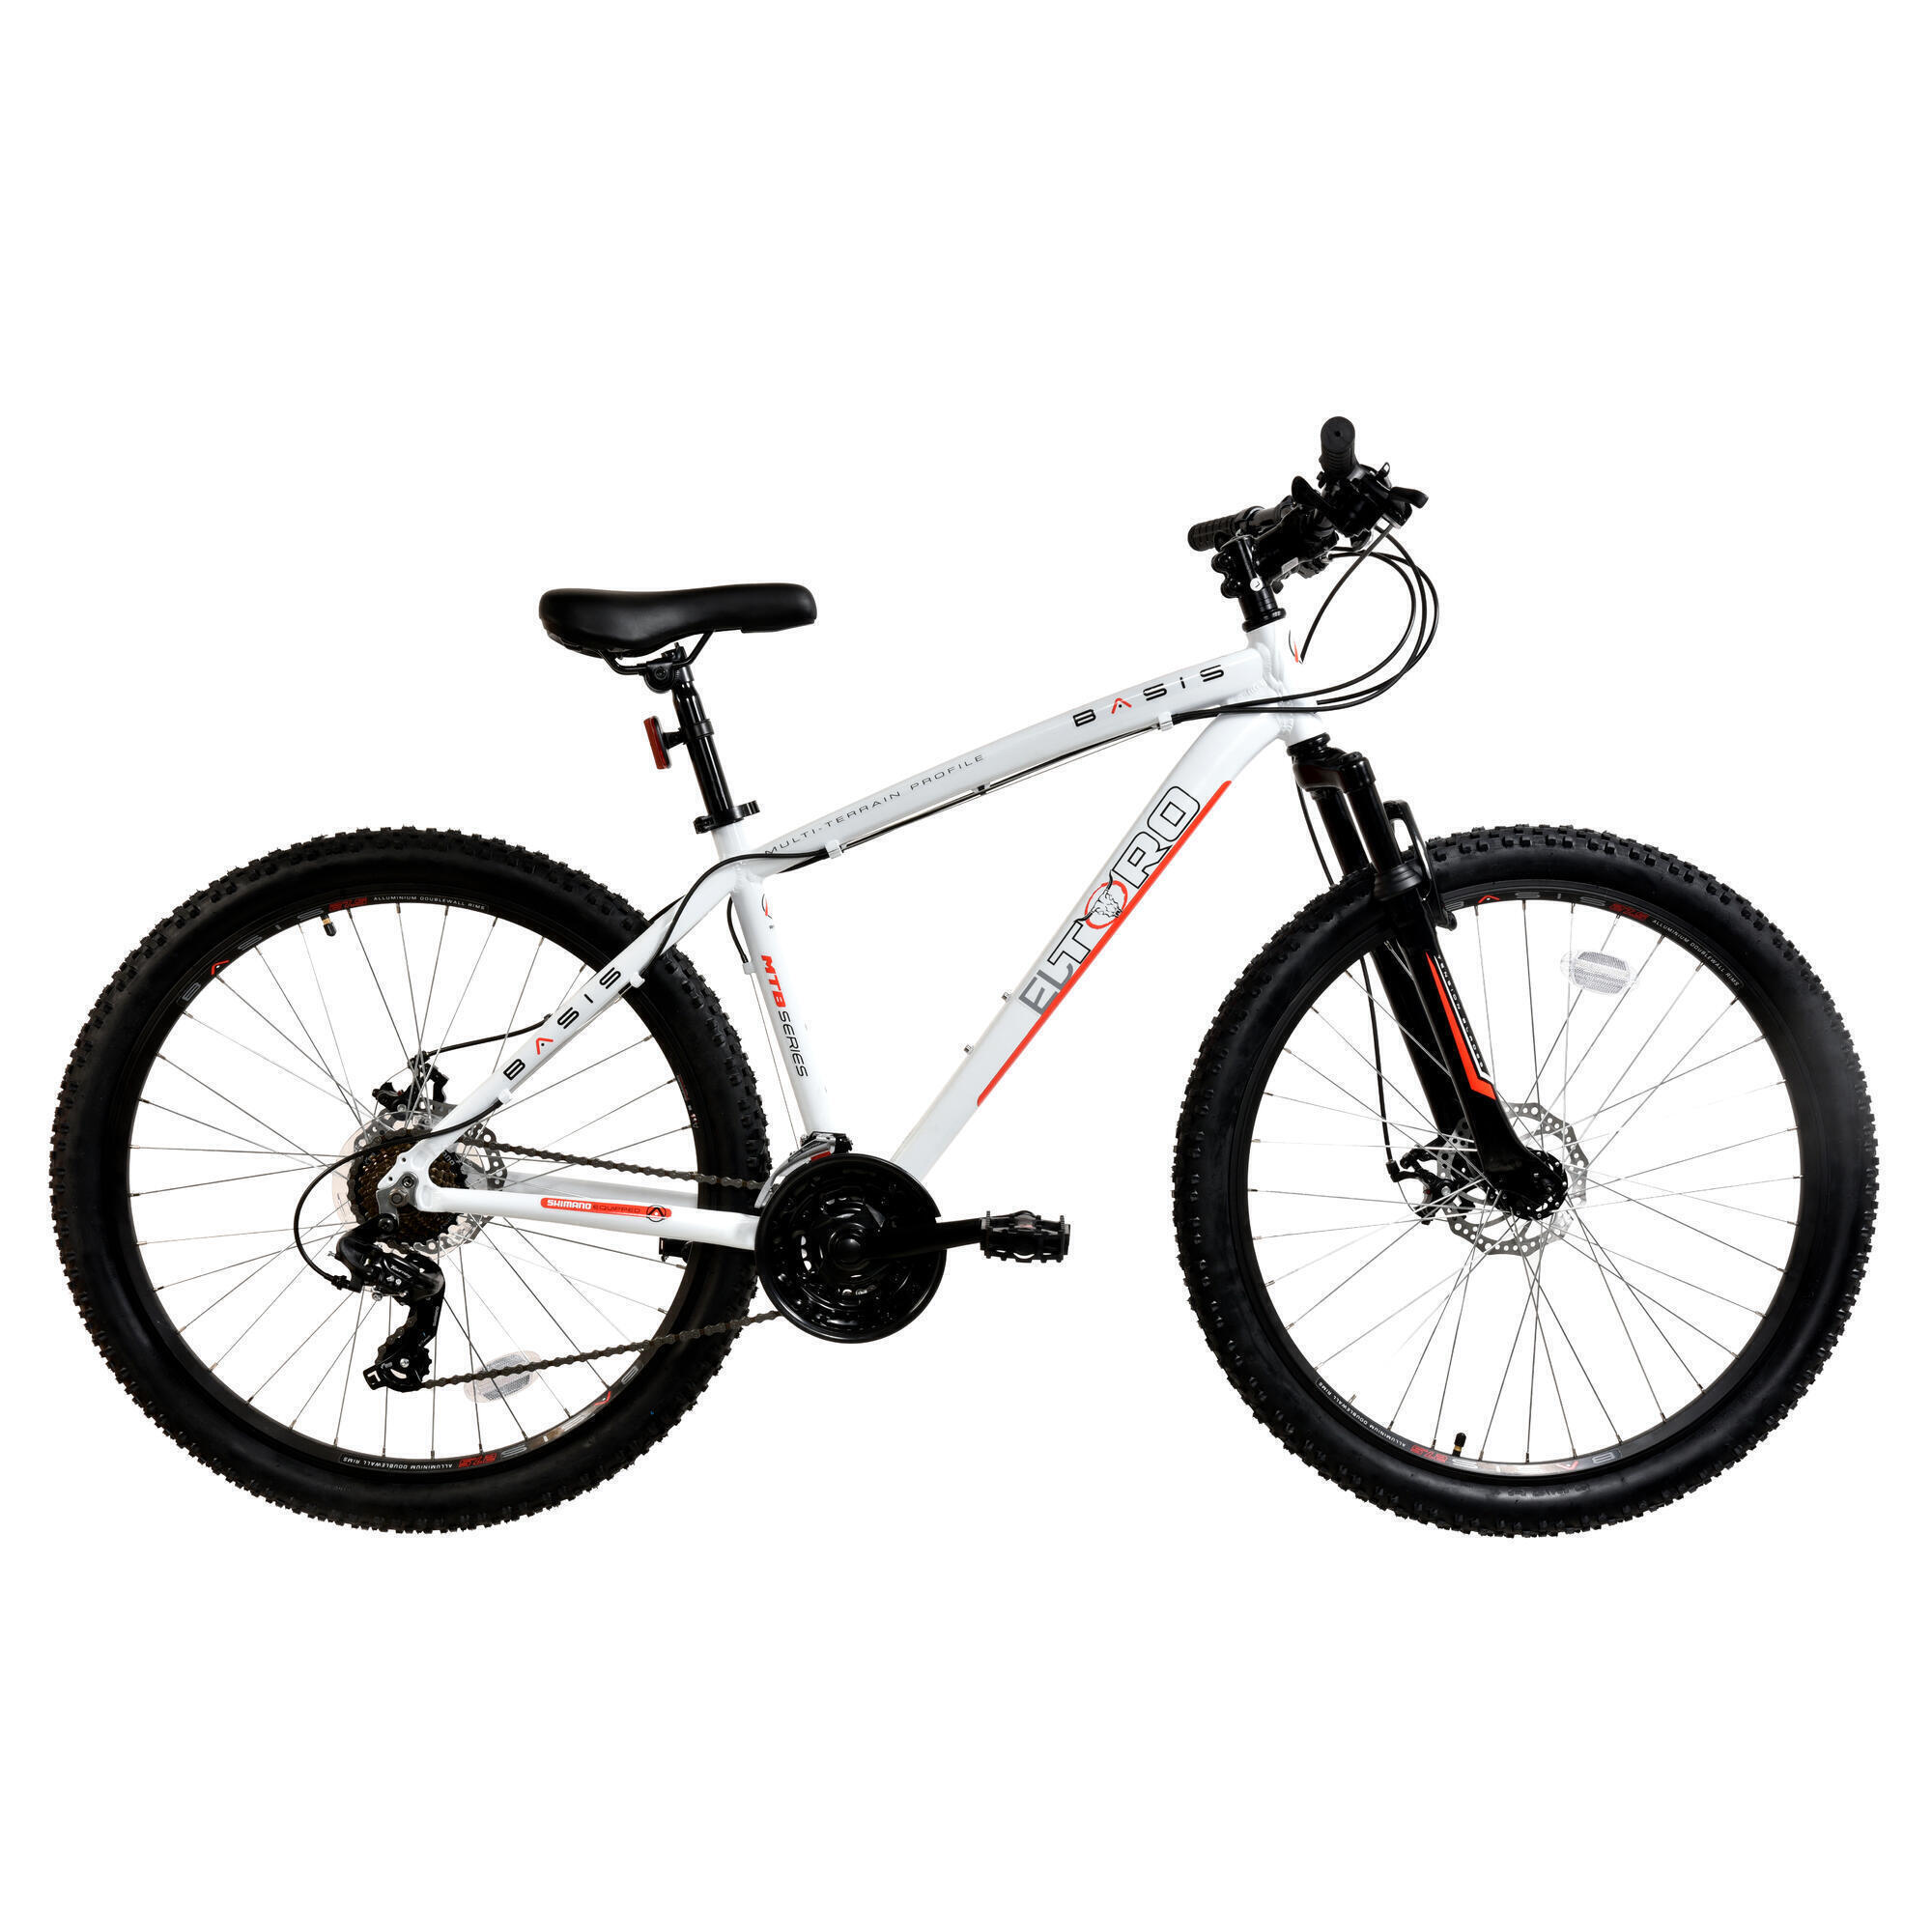 BASIS Basis El Toro Men's Hardtail Mountain Bike, 27.5In Wheel -White/Red